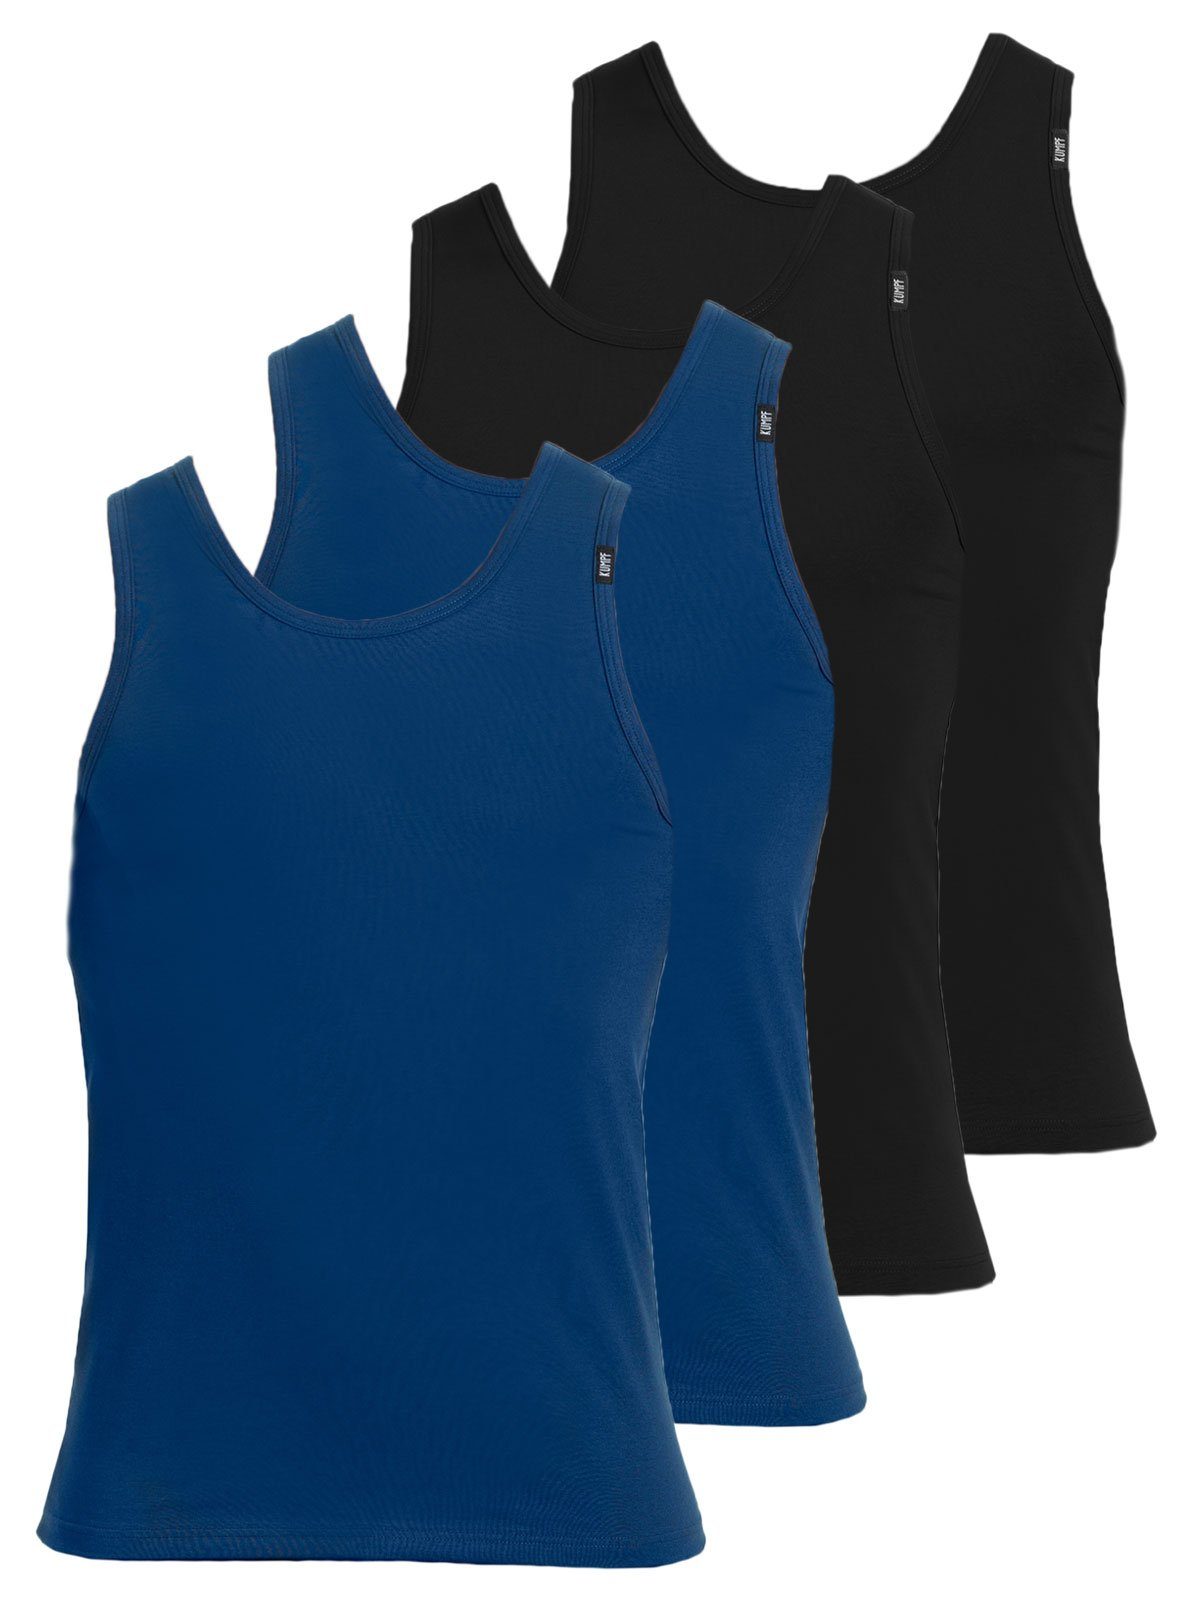 KUMPF Achselhemd 4er Sparpack Herren Unterhemd Bio Cotton (Spar-Set, 4-St) hohe Markenqualität darkblue schwarz